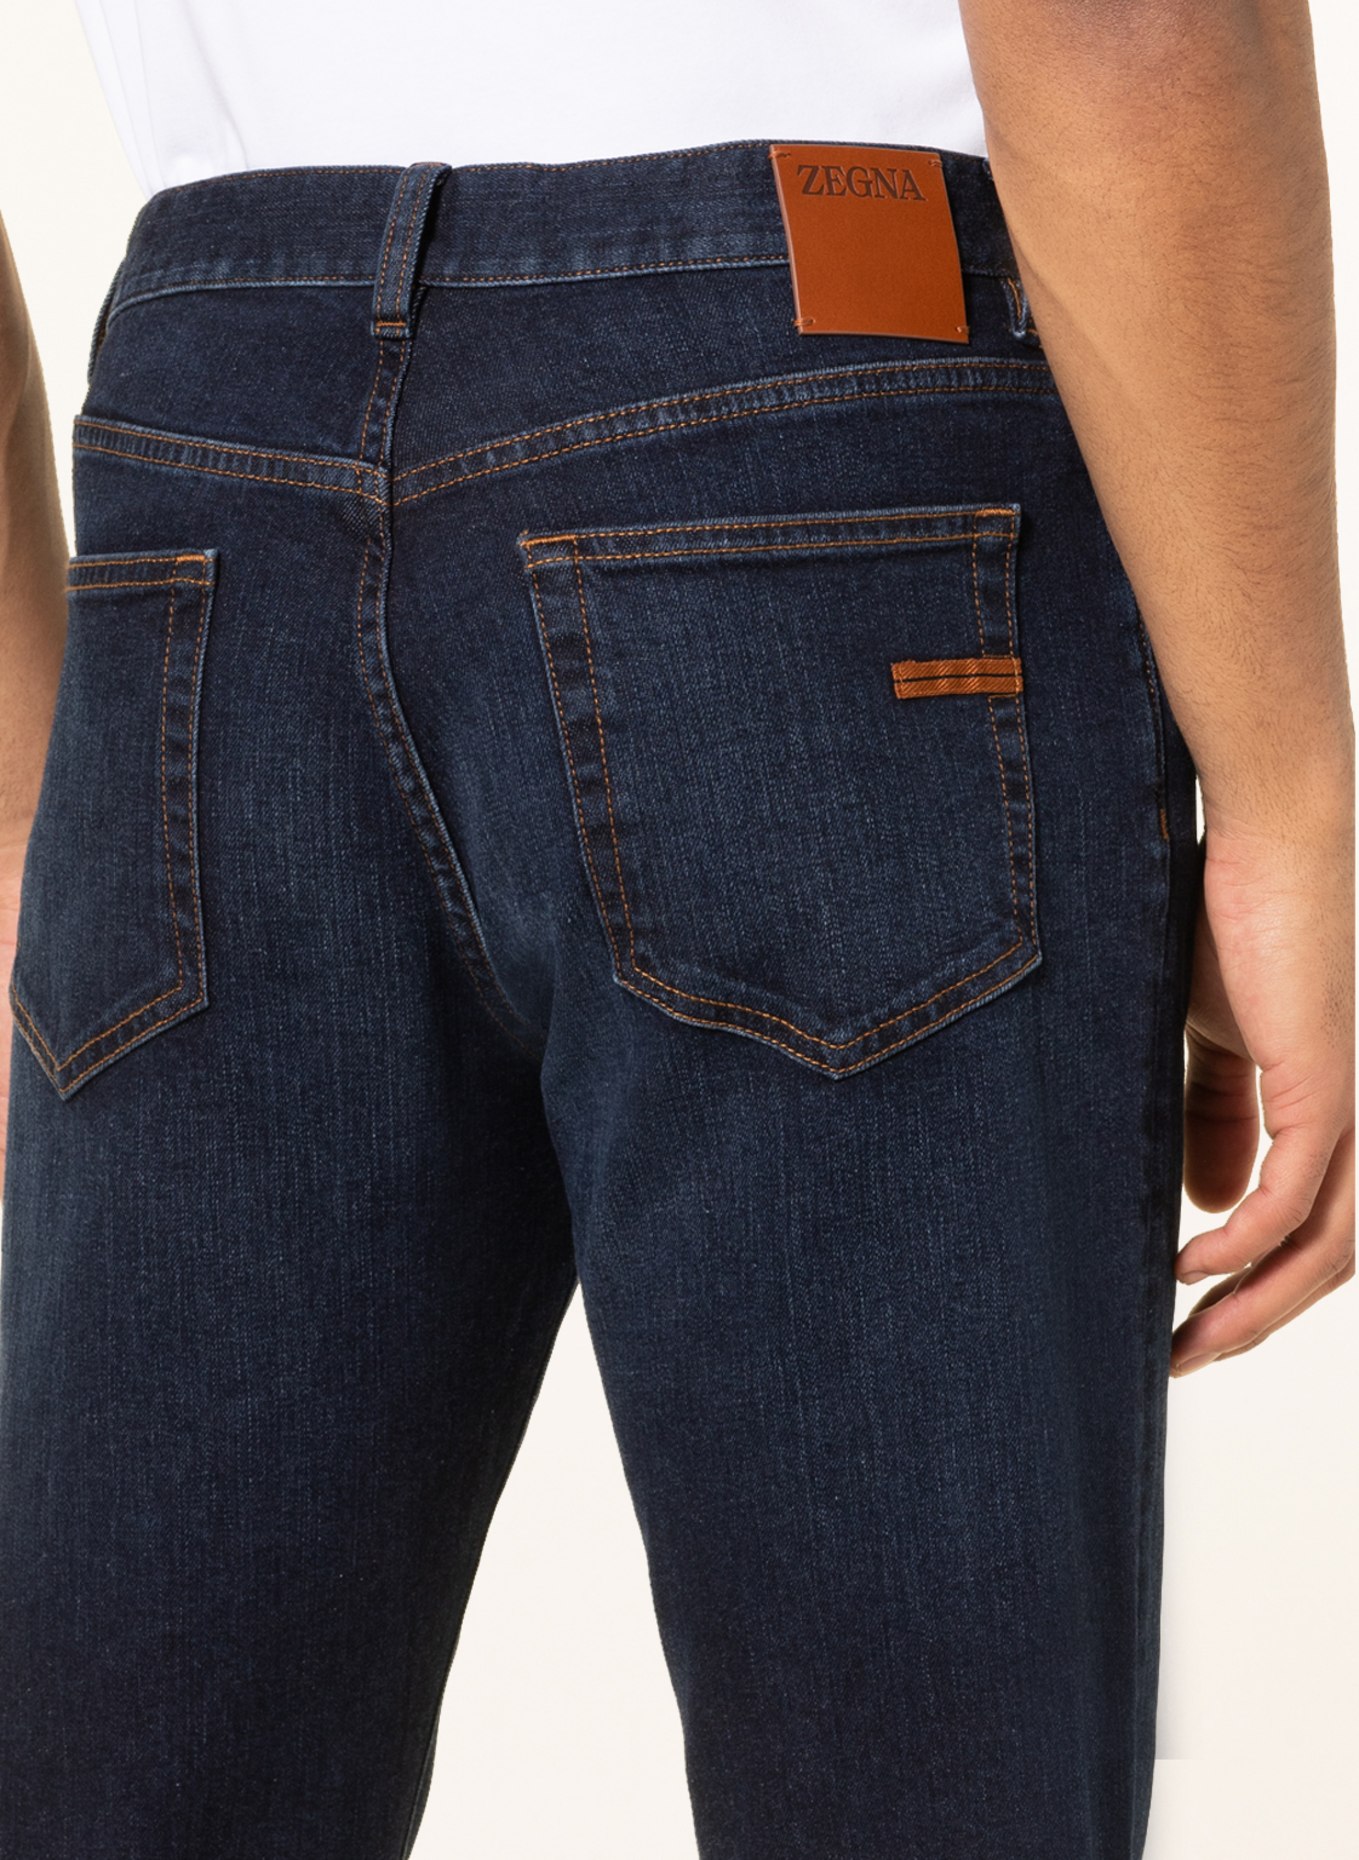 ZEGNA Jeans comfort fit, Color: 001 DARK BLUE (Image 6)